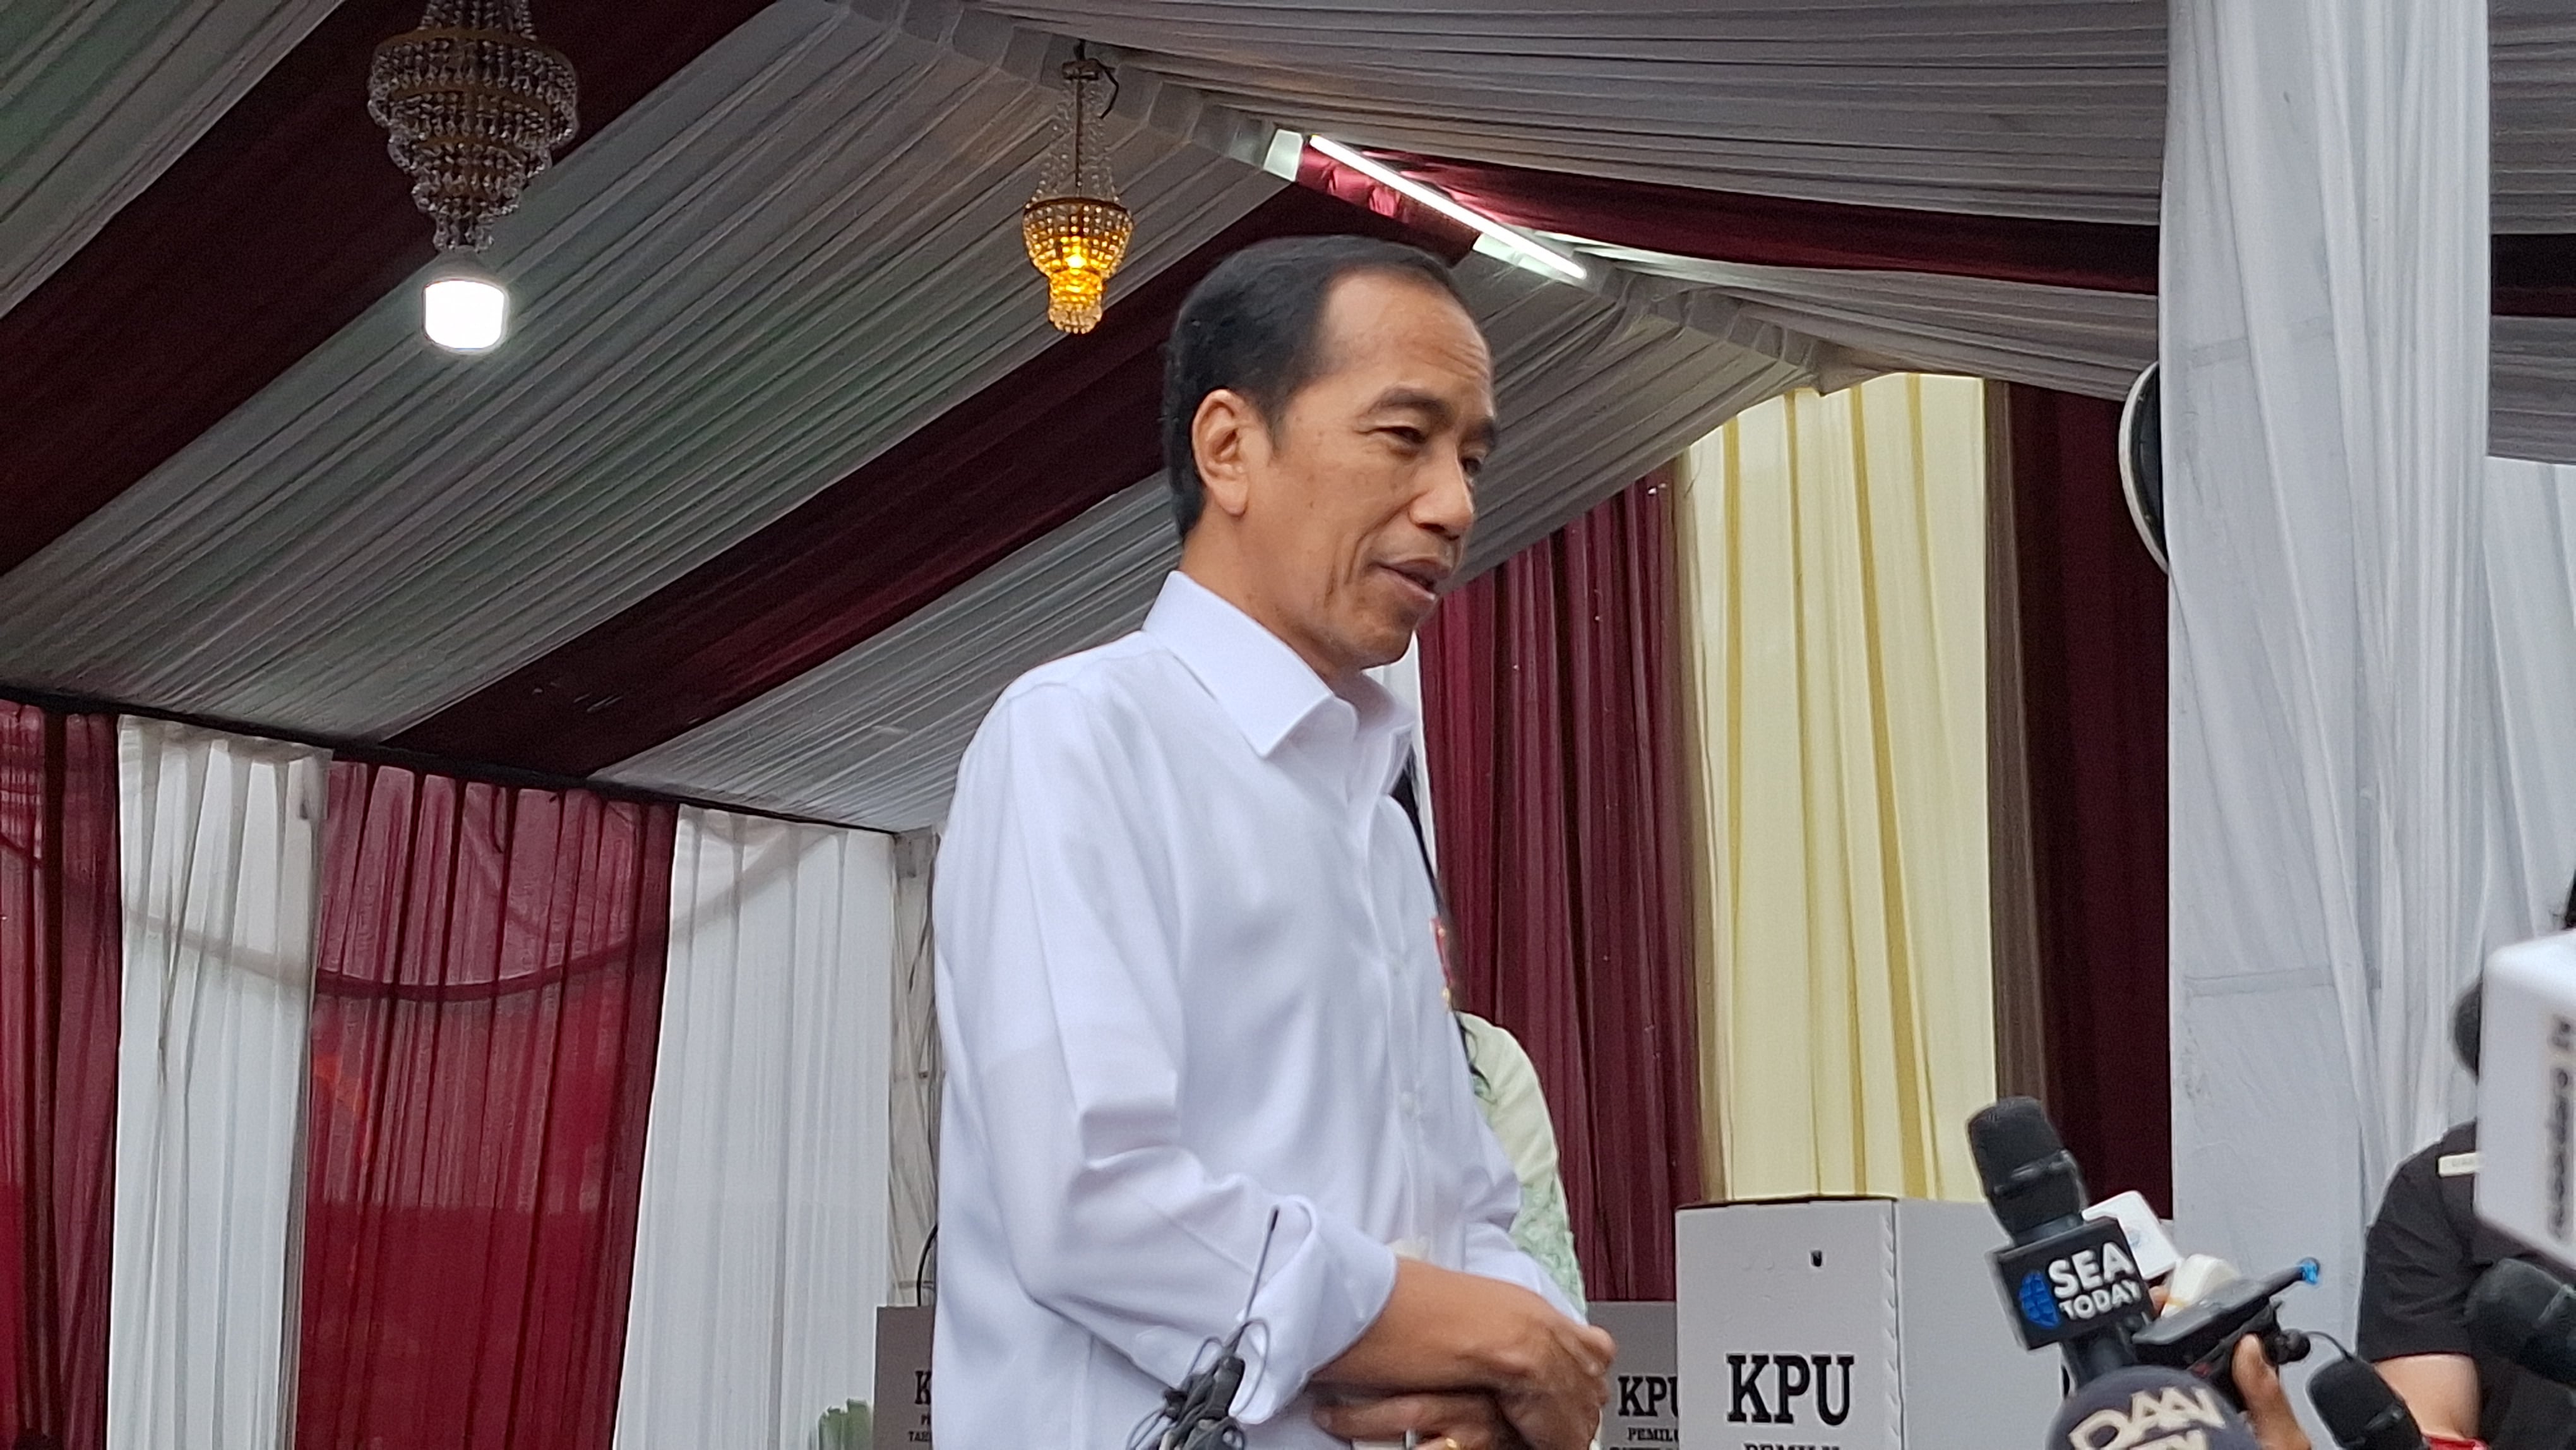 Timnas Amin dan TPN Ganjar-Mahfud Soroti Kecurangan Pemilu, Jokowi: Jangan Teriak-Teriak, Laporkan ke Bawaslu dan MK